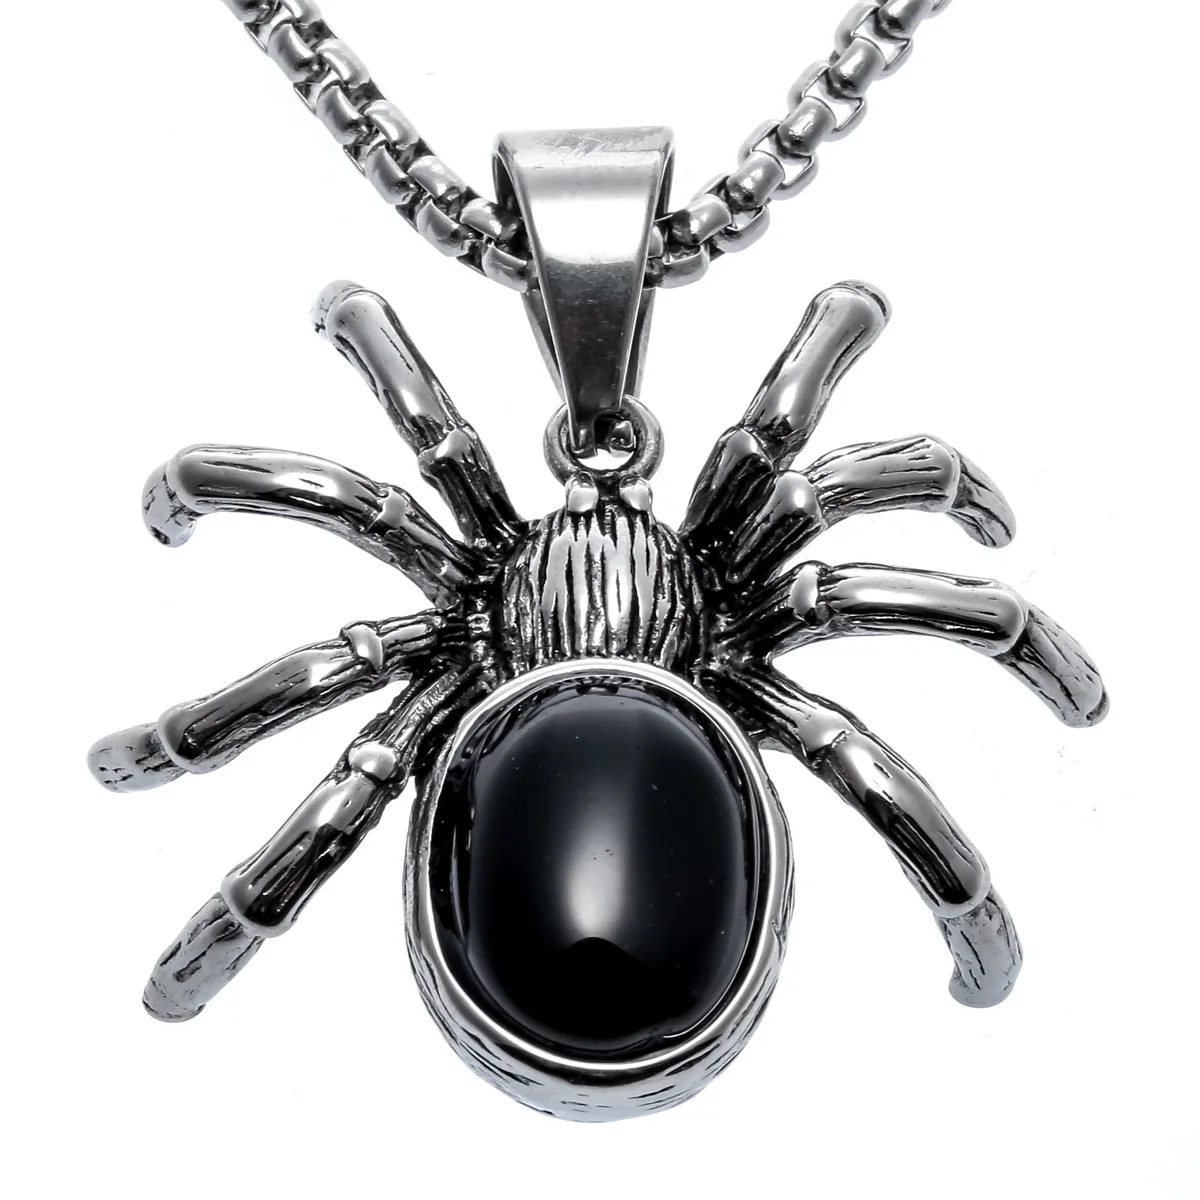 Yacq ожерелье с пауком кулон W цепь ювелирные изделия из нержавеющей стали Хэллоуин вечерние украшения подарки для мужчин женщин детей девочек ее A029